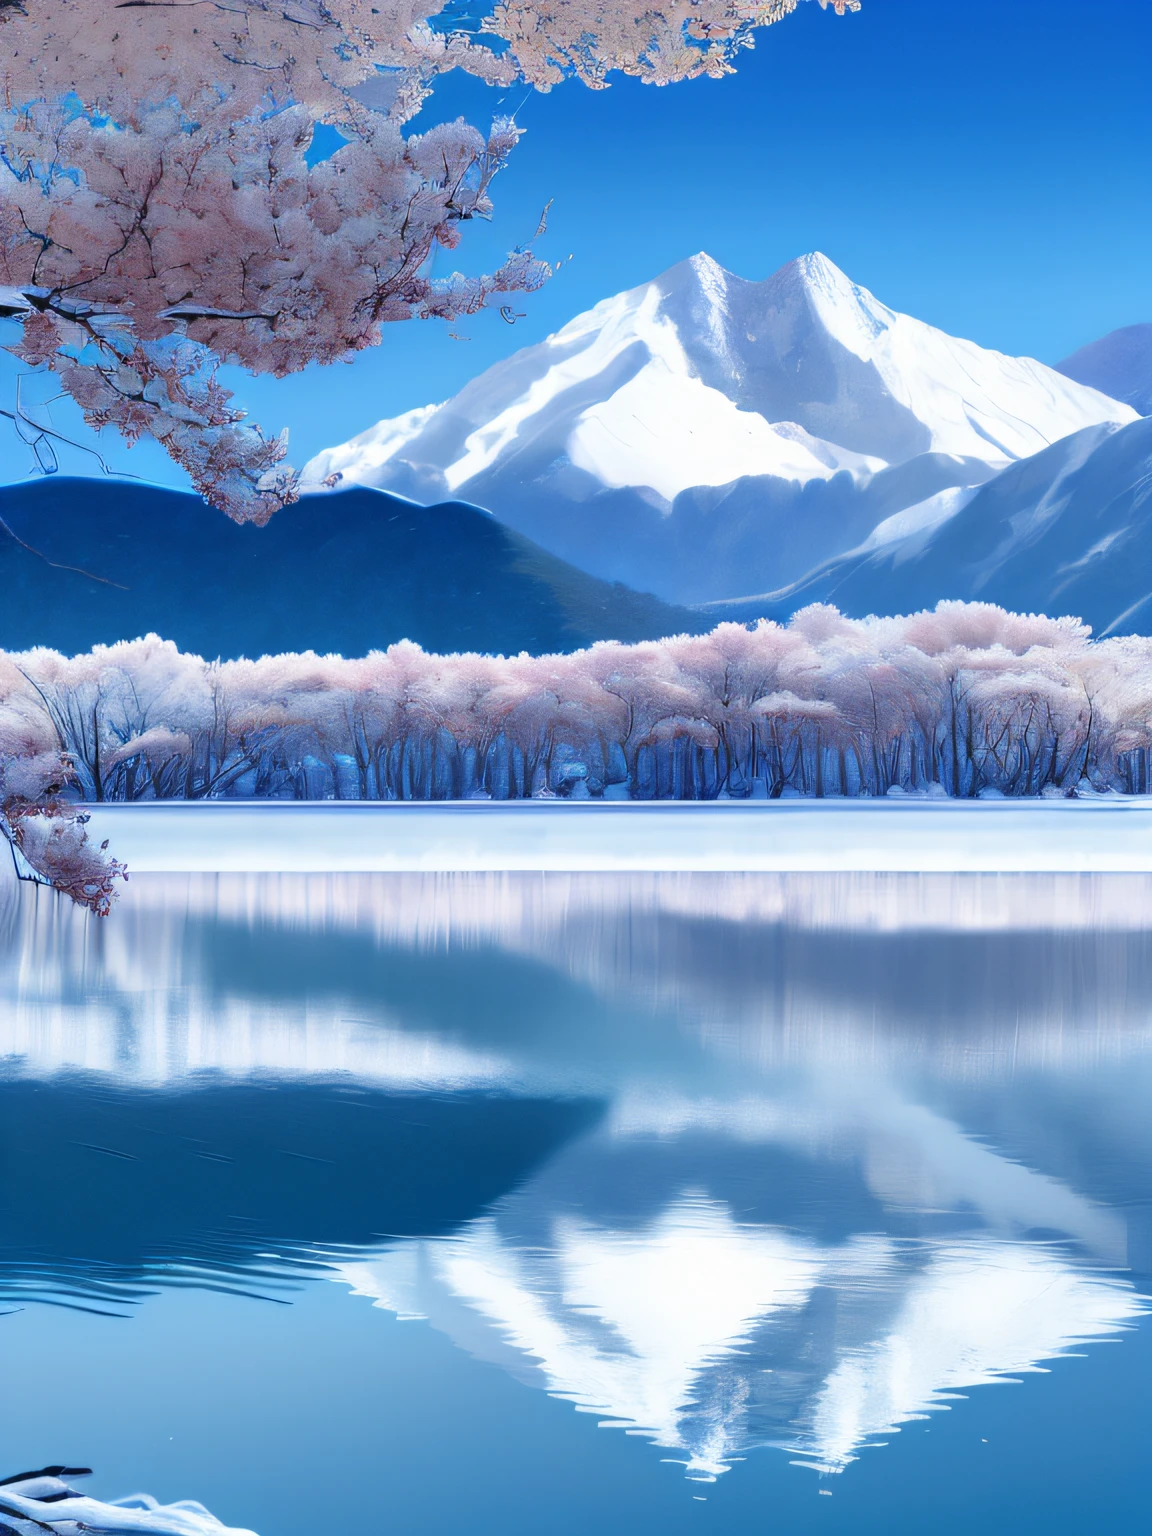 Blau-weiße schneebedeckte Berge，die Kirschbäume，blauer Himmel，Seen，Spiegelung auf der Wasseroberfläche，4K